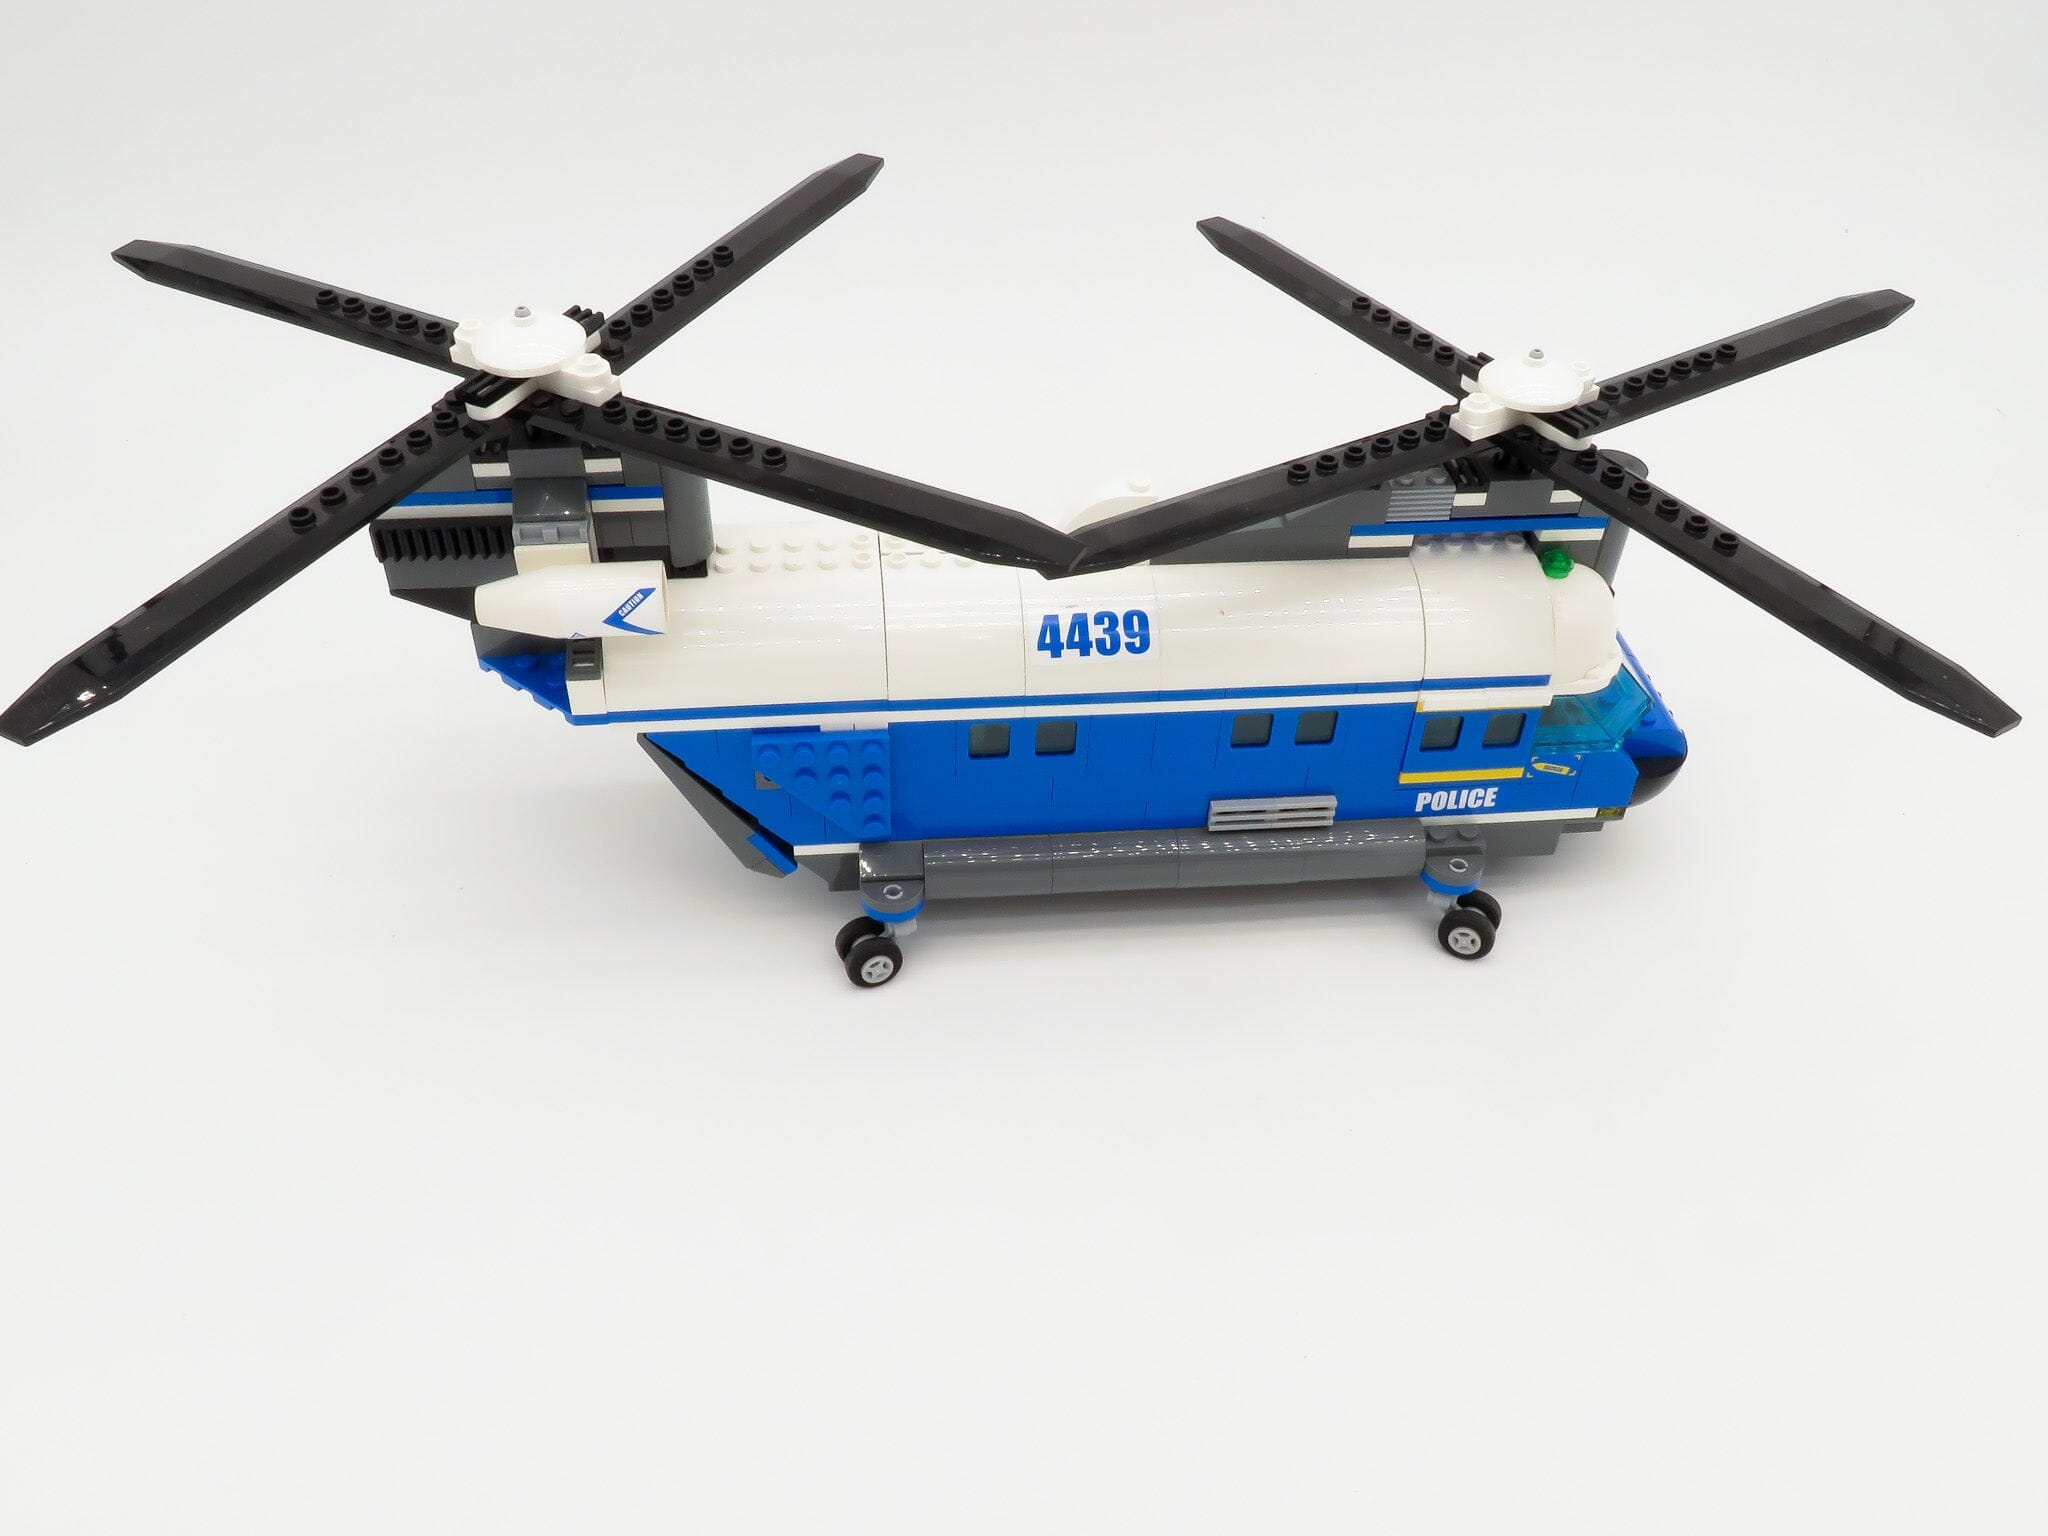 LEGO® City 4439 L'hélicoptere de transport - Lego